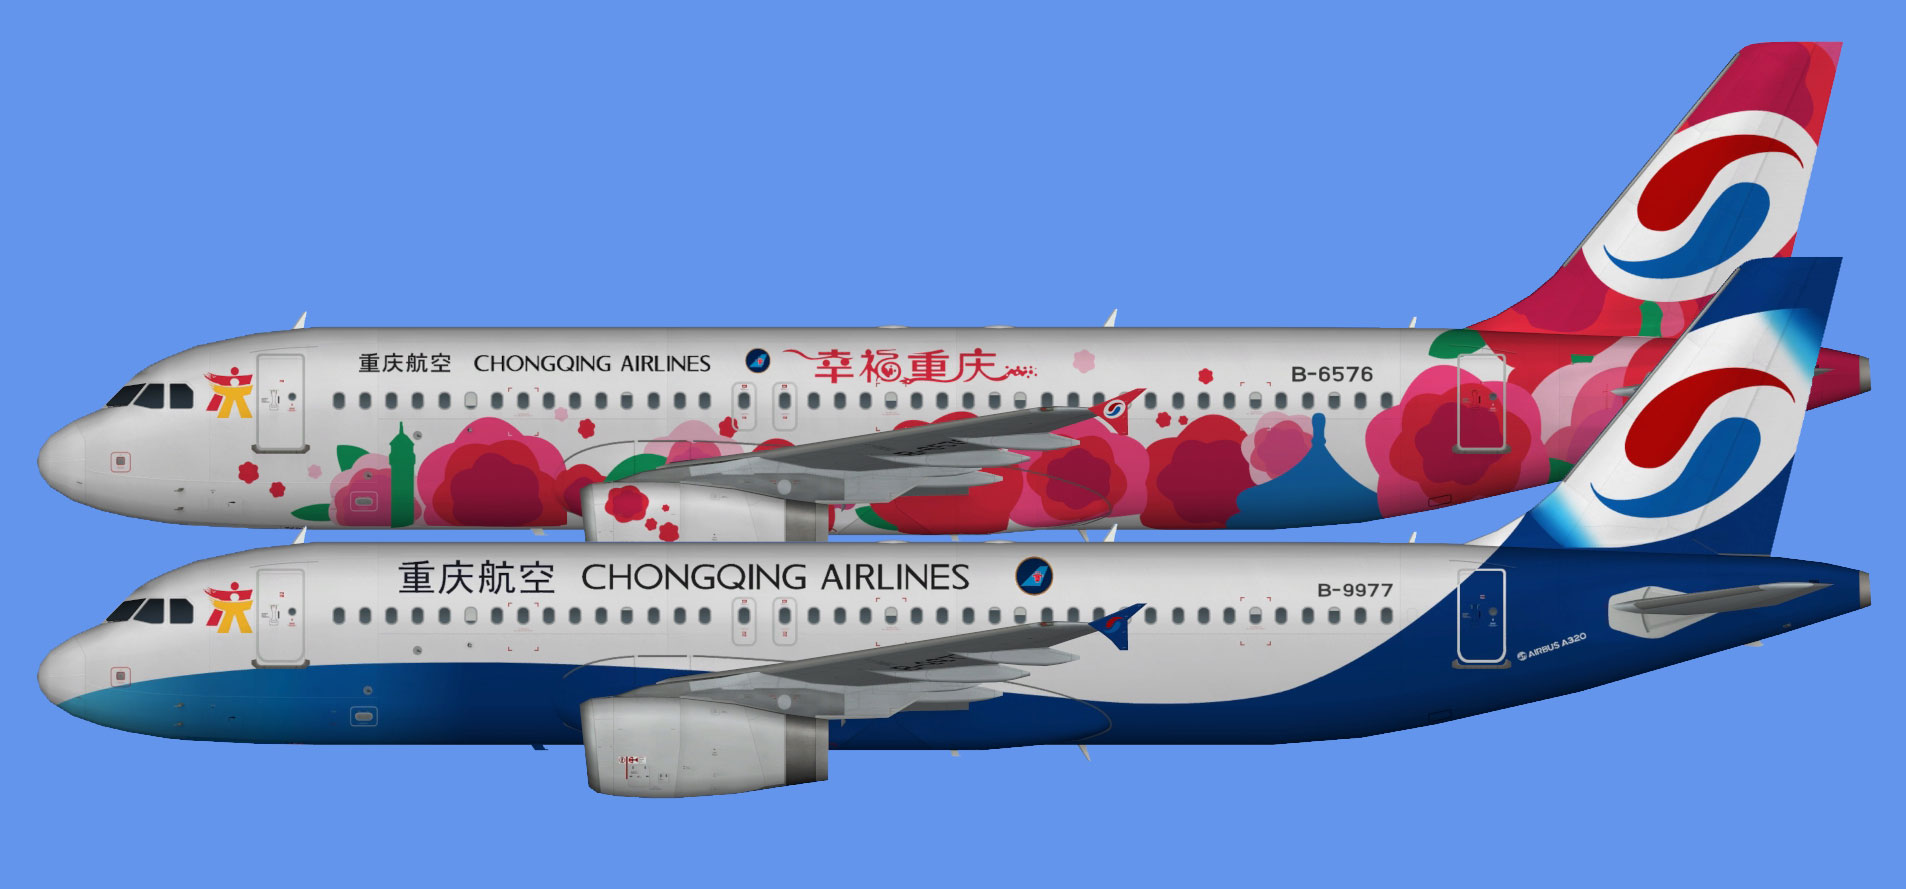 Chongqing Airlines A320 fleet